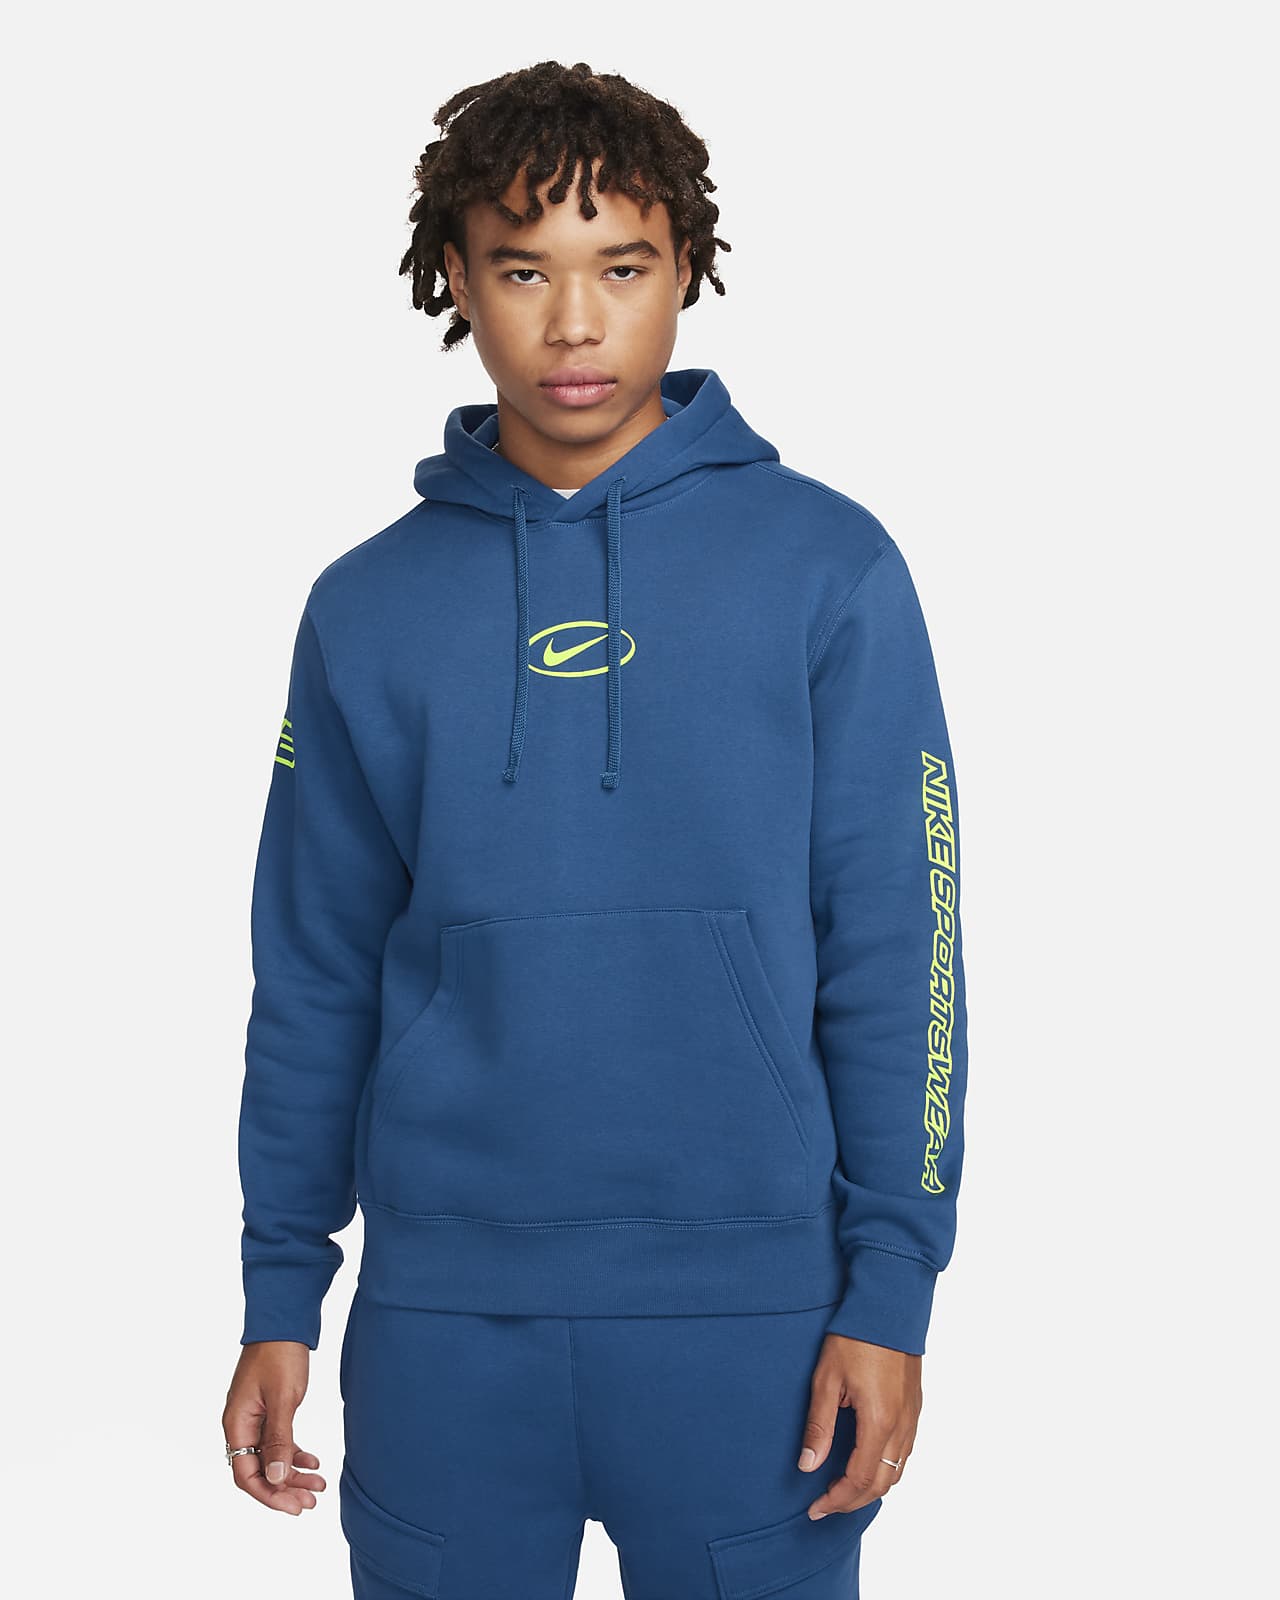 Hoodie pullover Nike Sportswear para homem